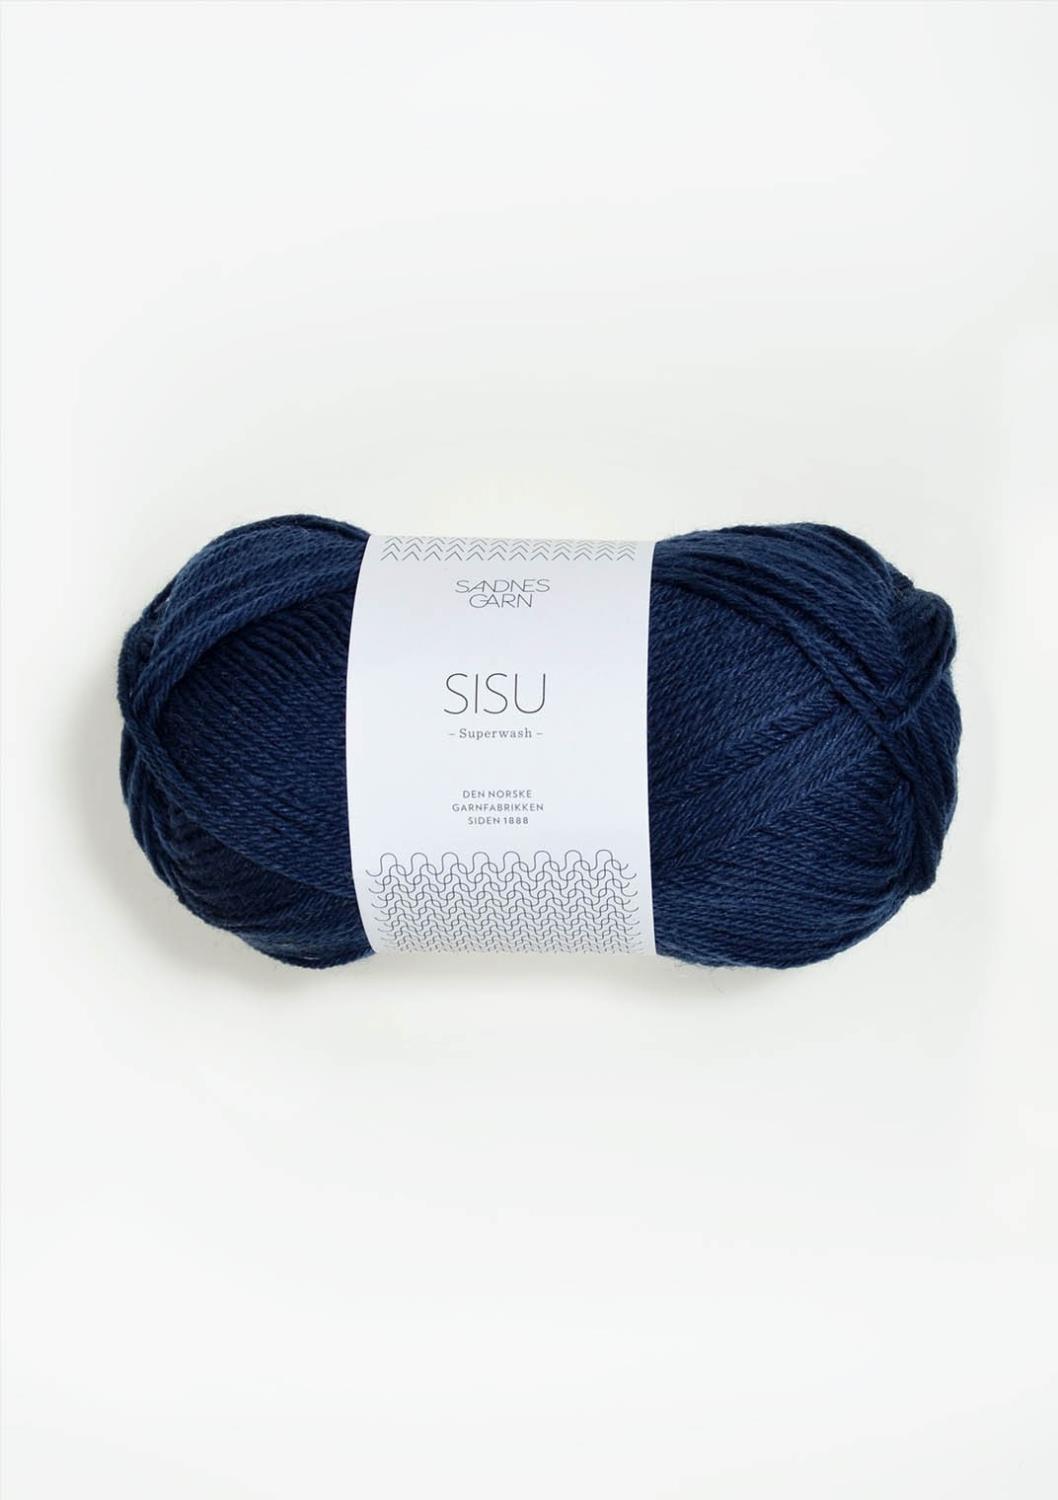 6062 Sisu - mørk blå